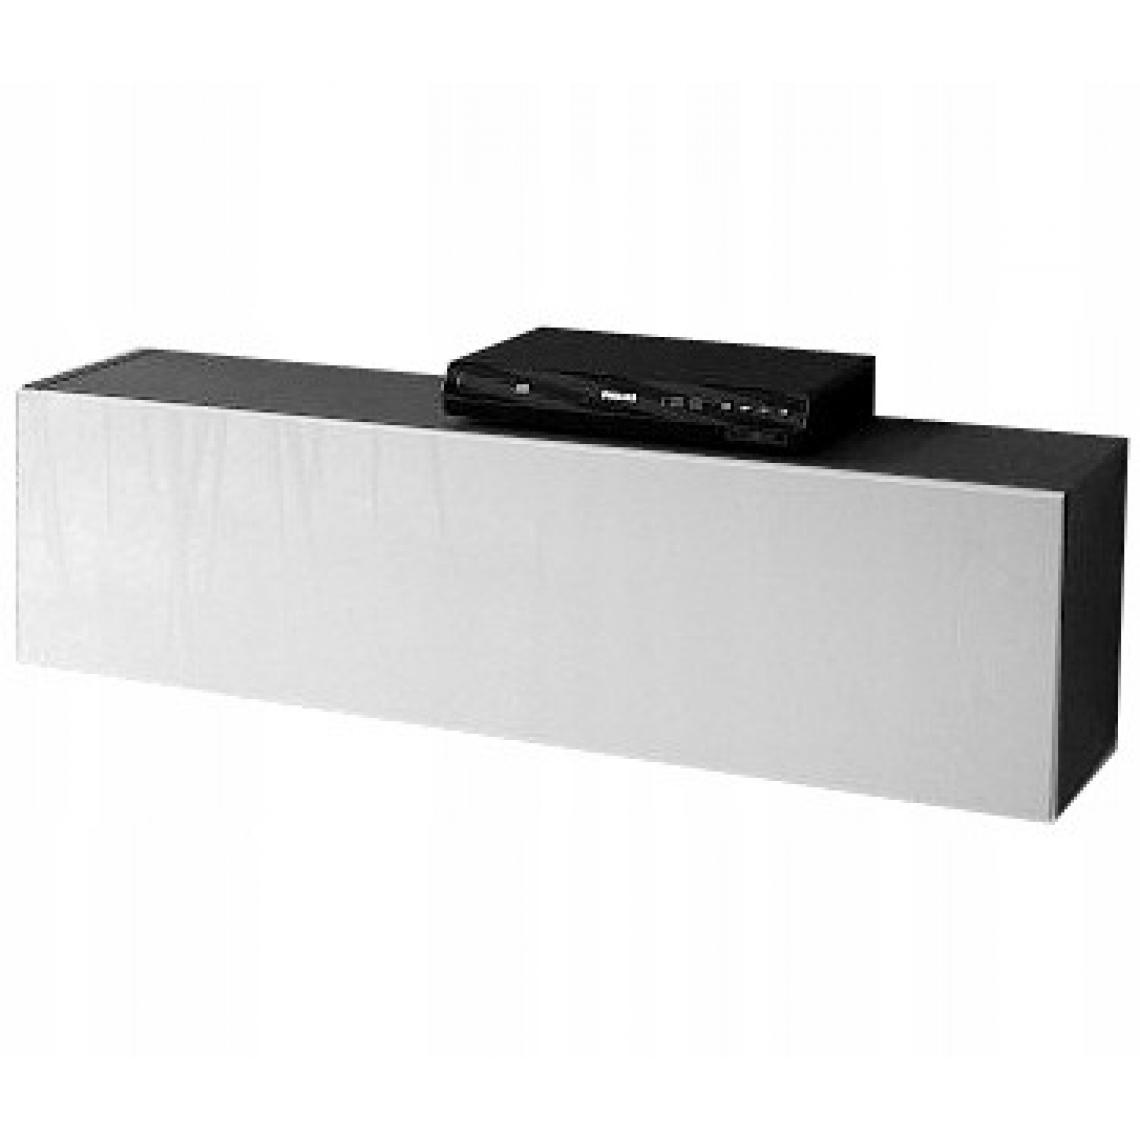 Mpc - Meuble suspendu noir et blanc 105 x 30 x 32 cm - Meubles TV, Hi-Fi